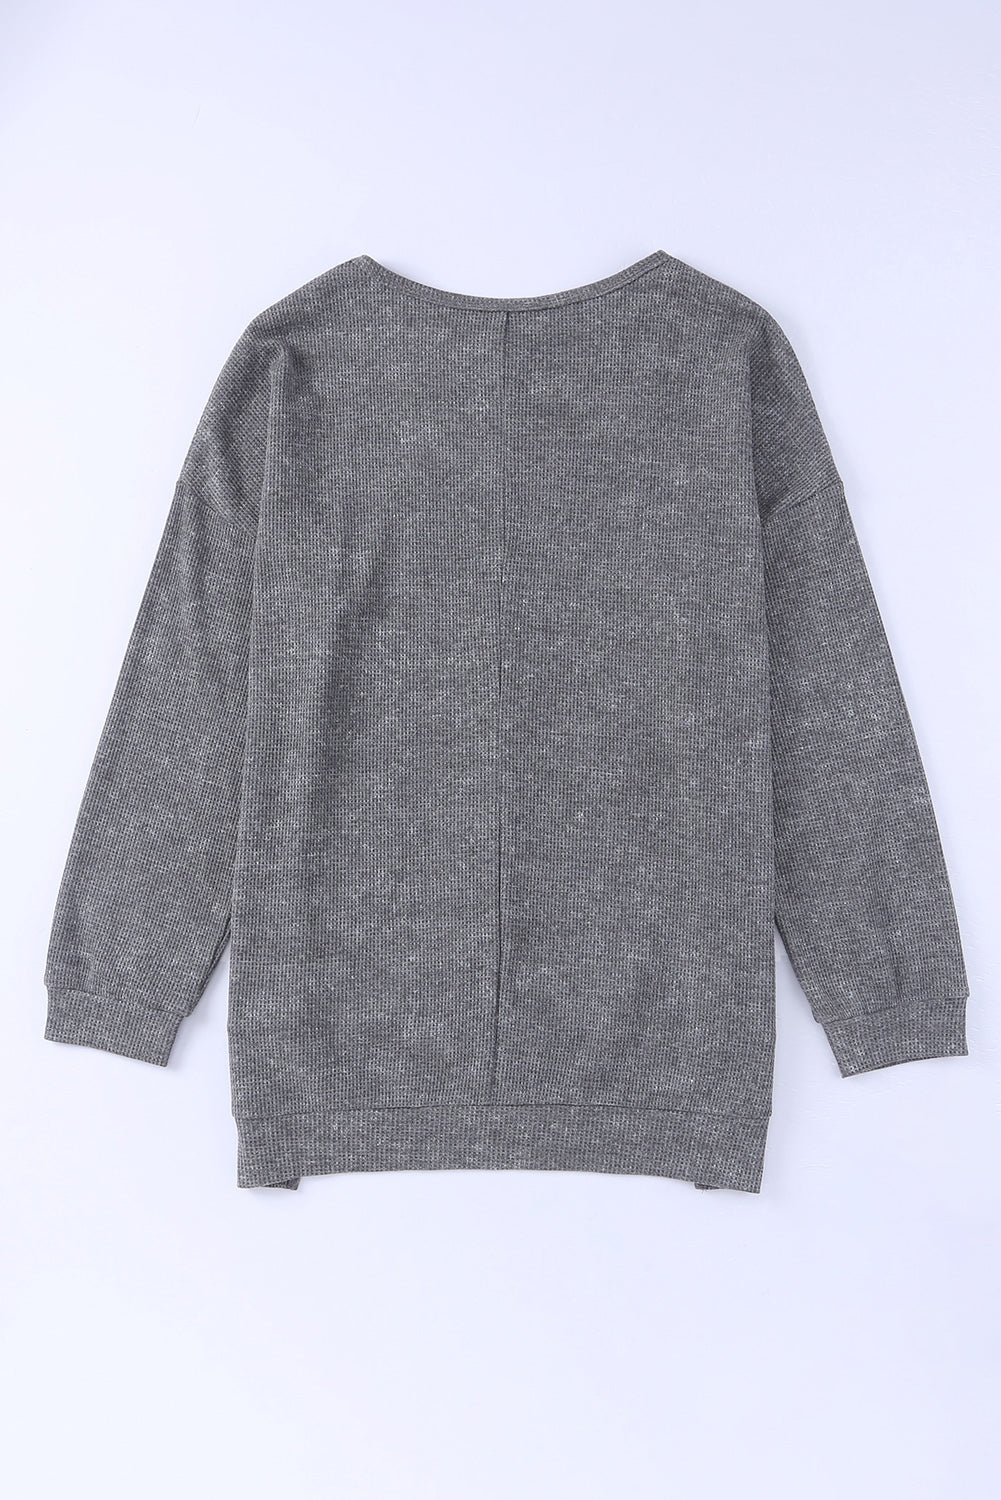 Haut pull gris en tricot gaufré avec fente latérale